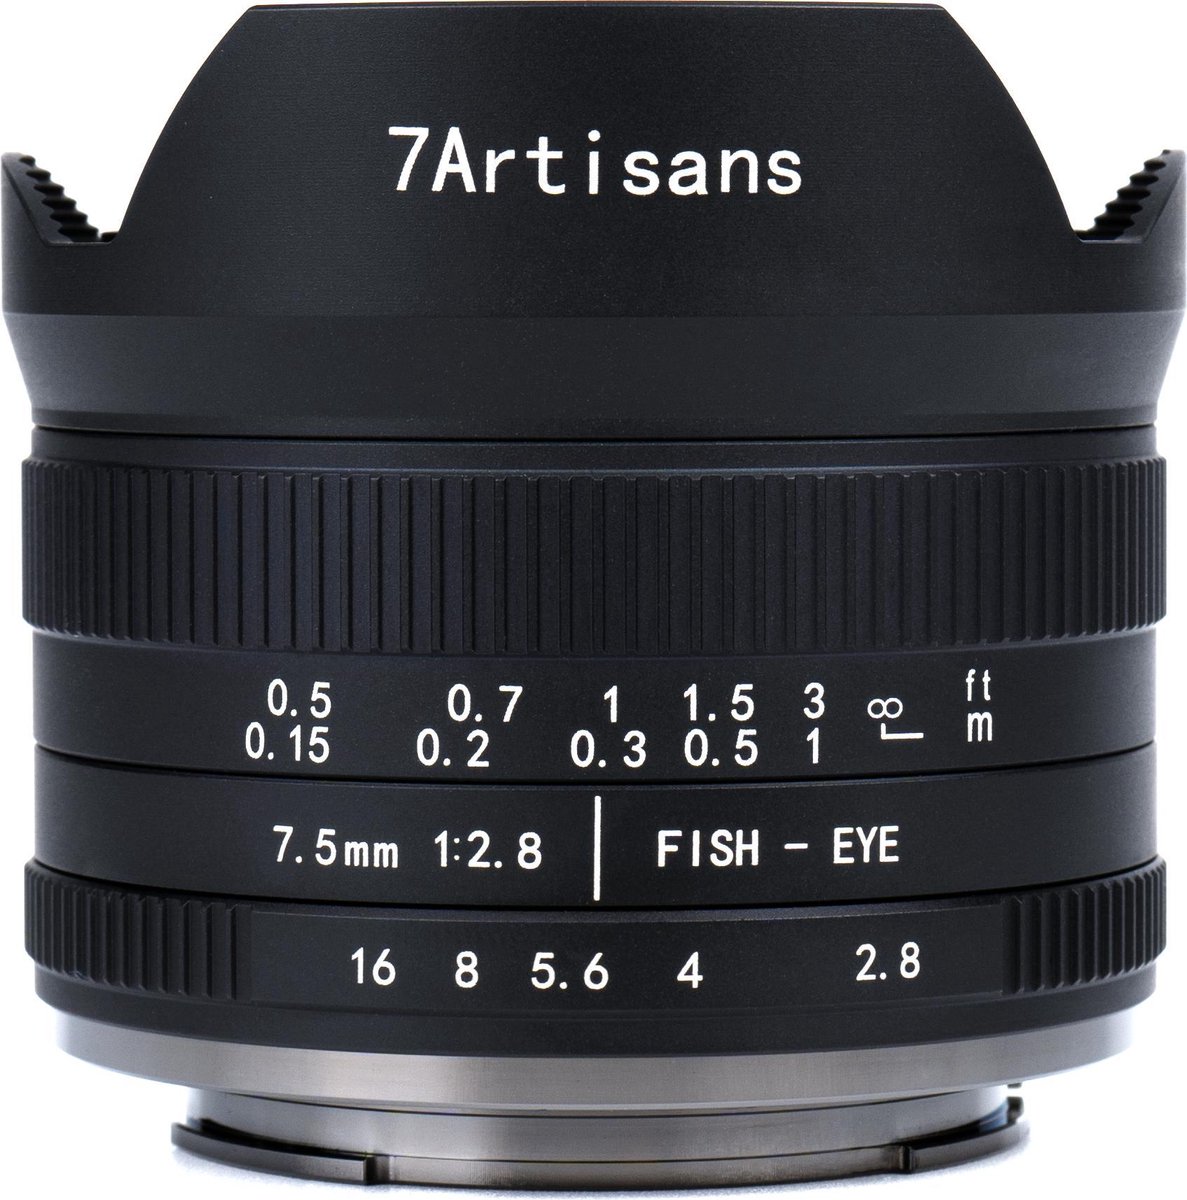 7 Artisans - Cameralens - 7.5mm F2.8 MKII APS-C voor Nikon Z-vatting